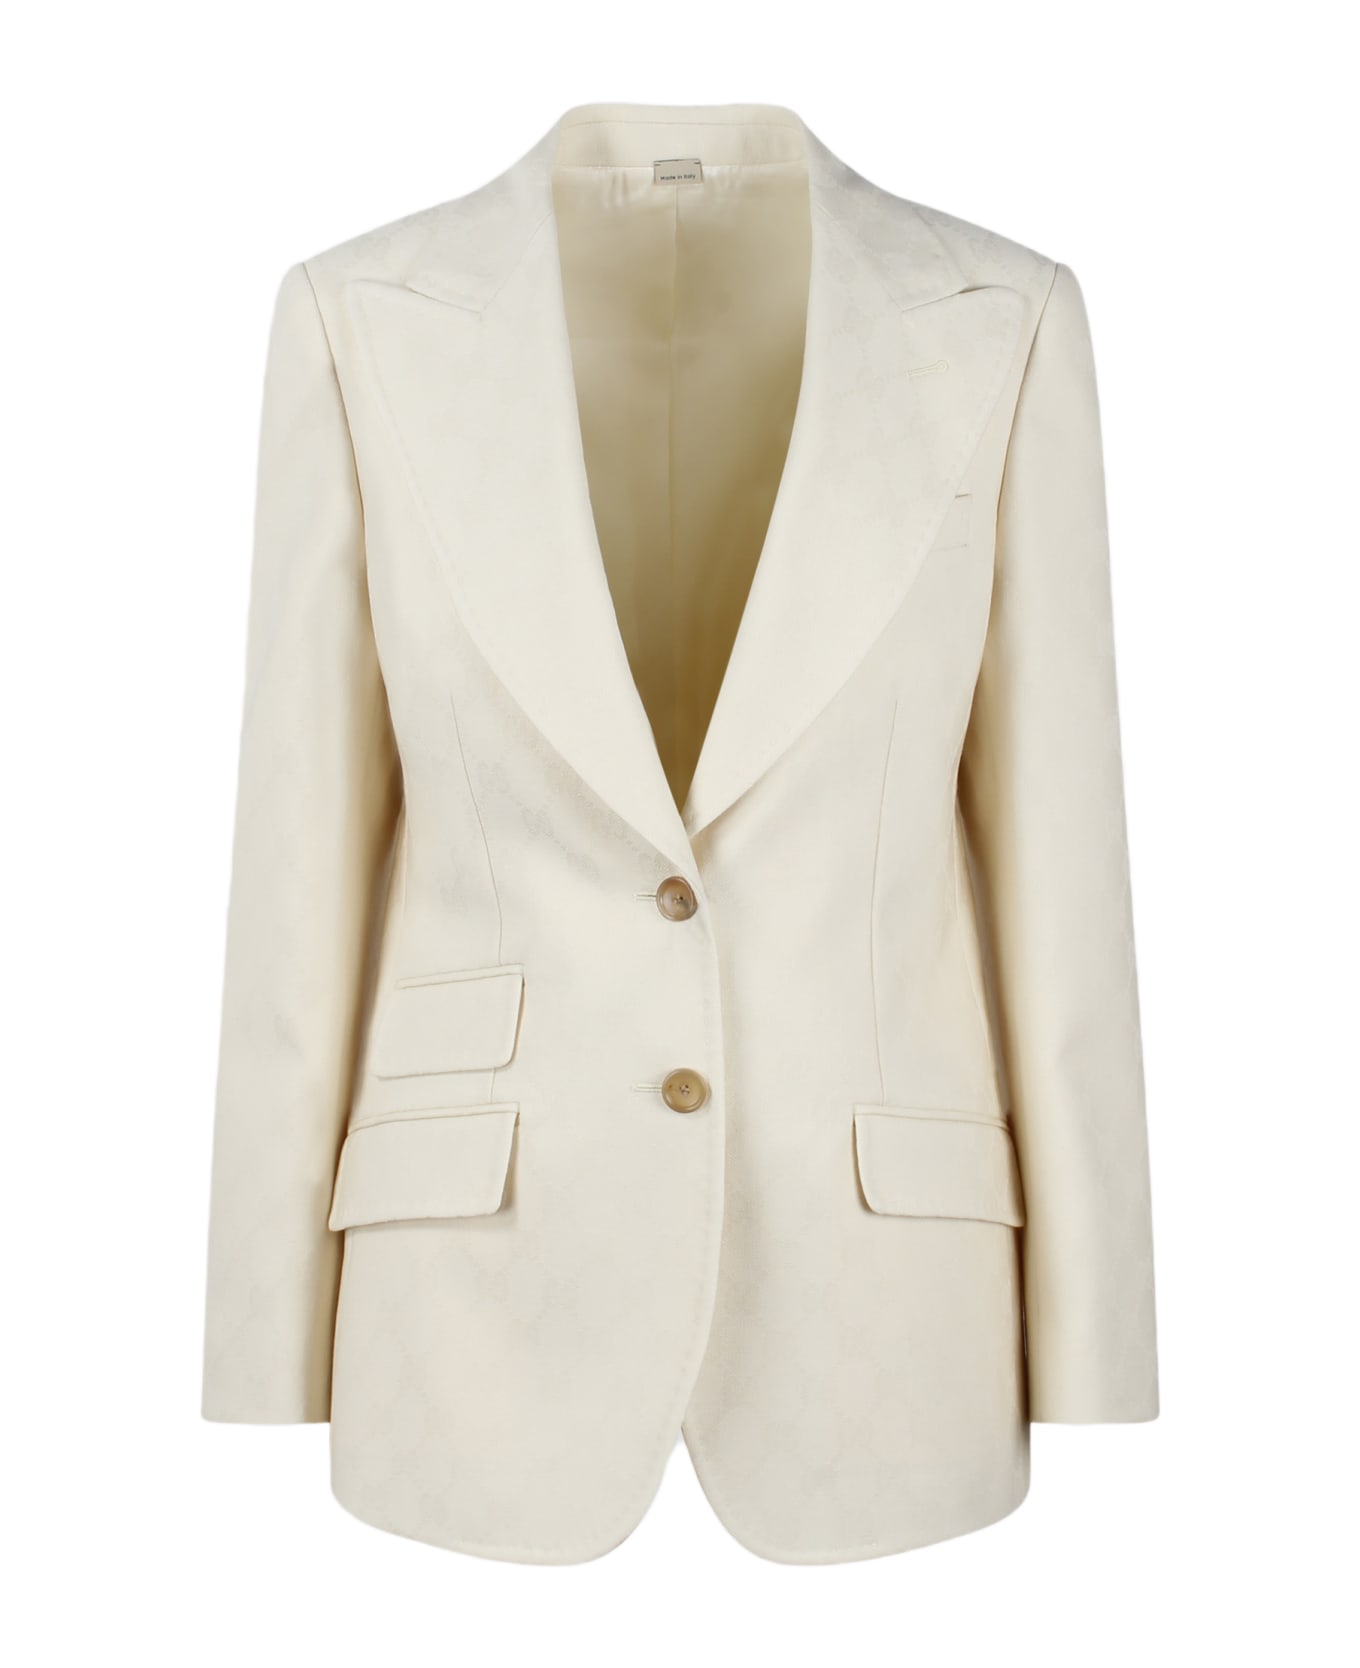 Gucci Gg Wool Jacquard Jacket - White ブレザー